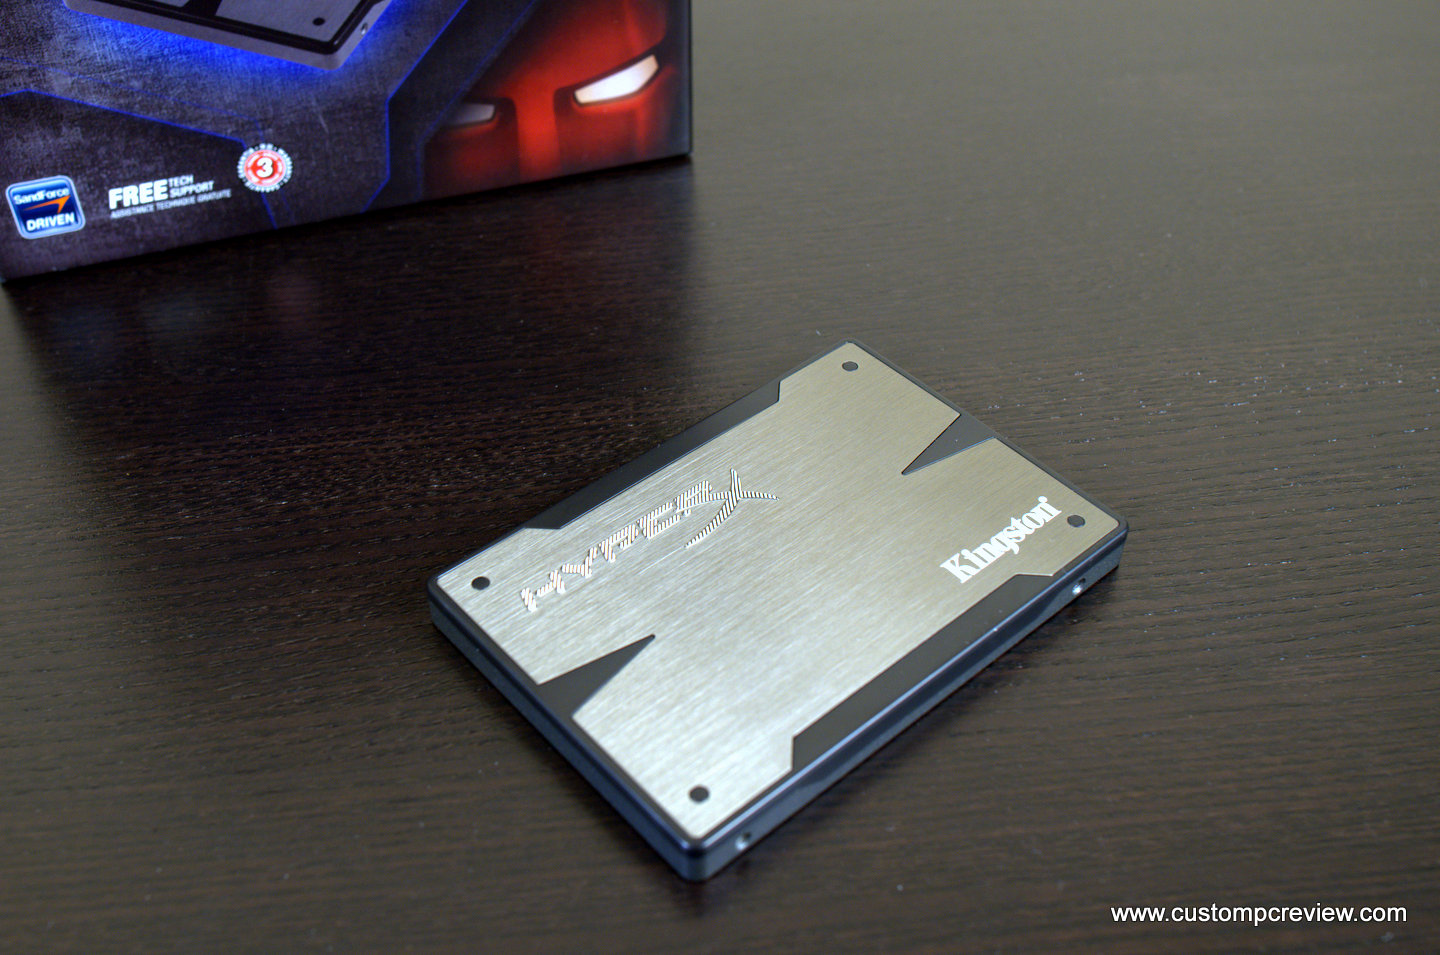 Kingston HyperX 3K SSD Review - Custom PC Review